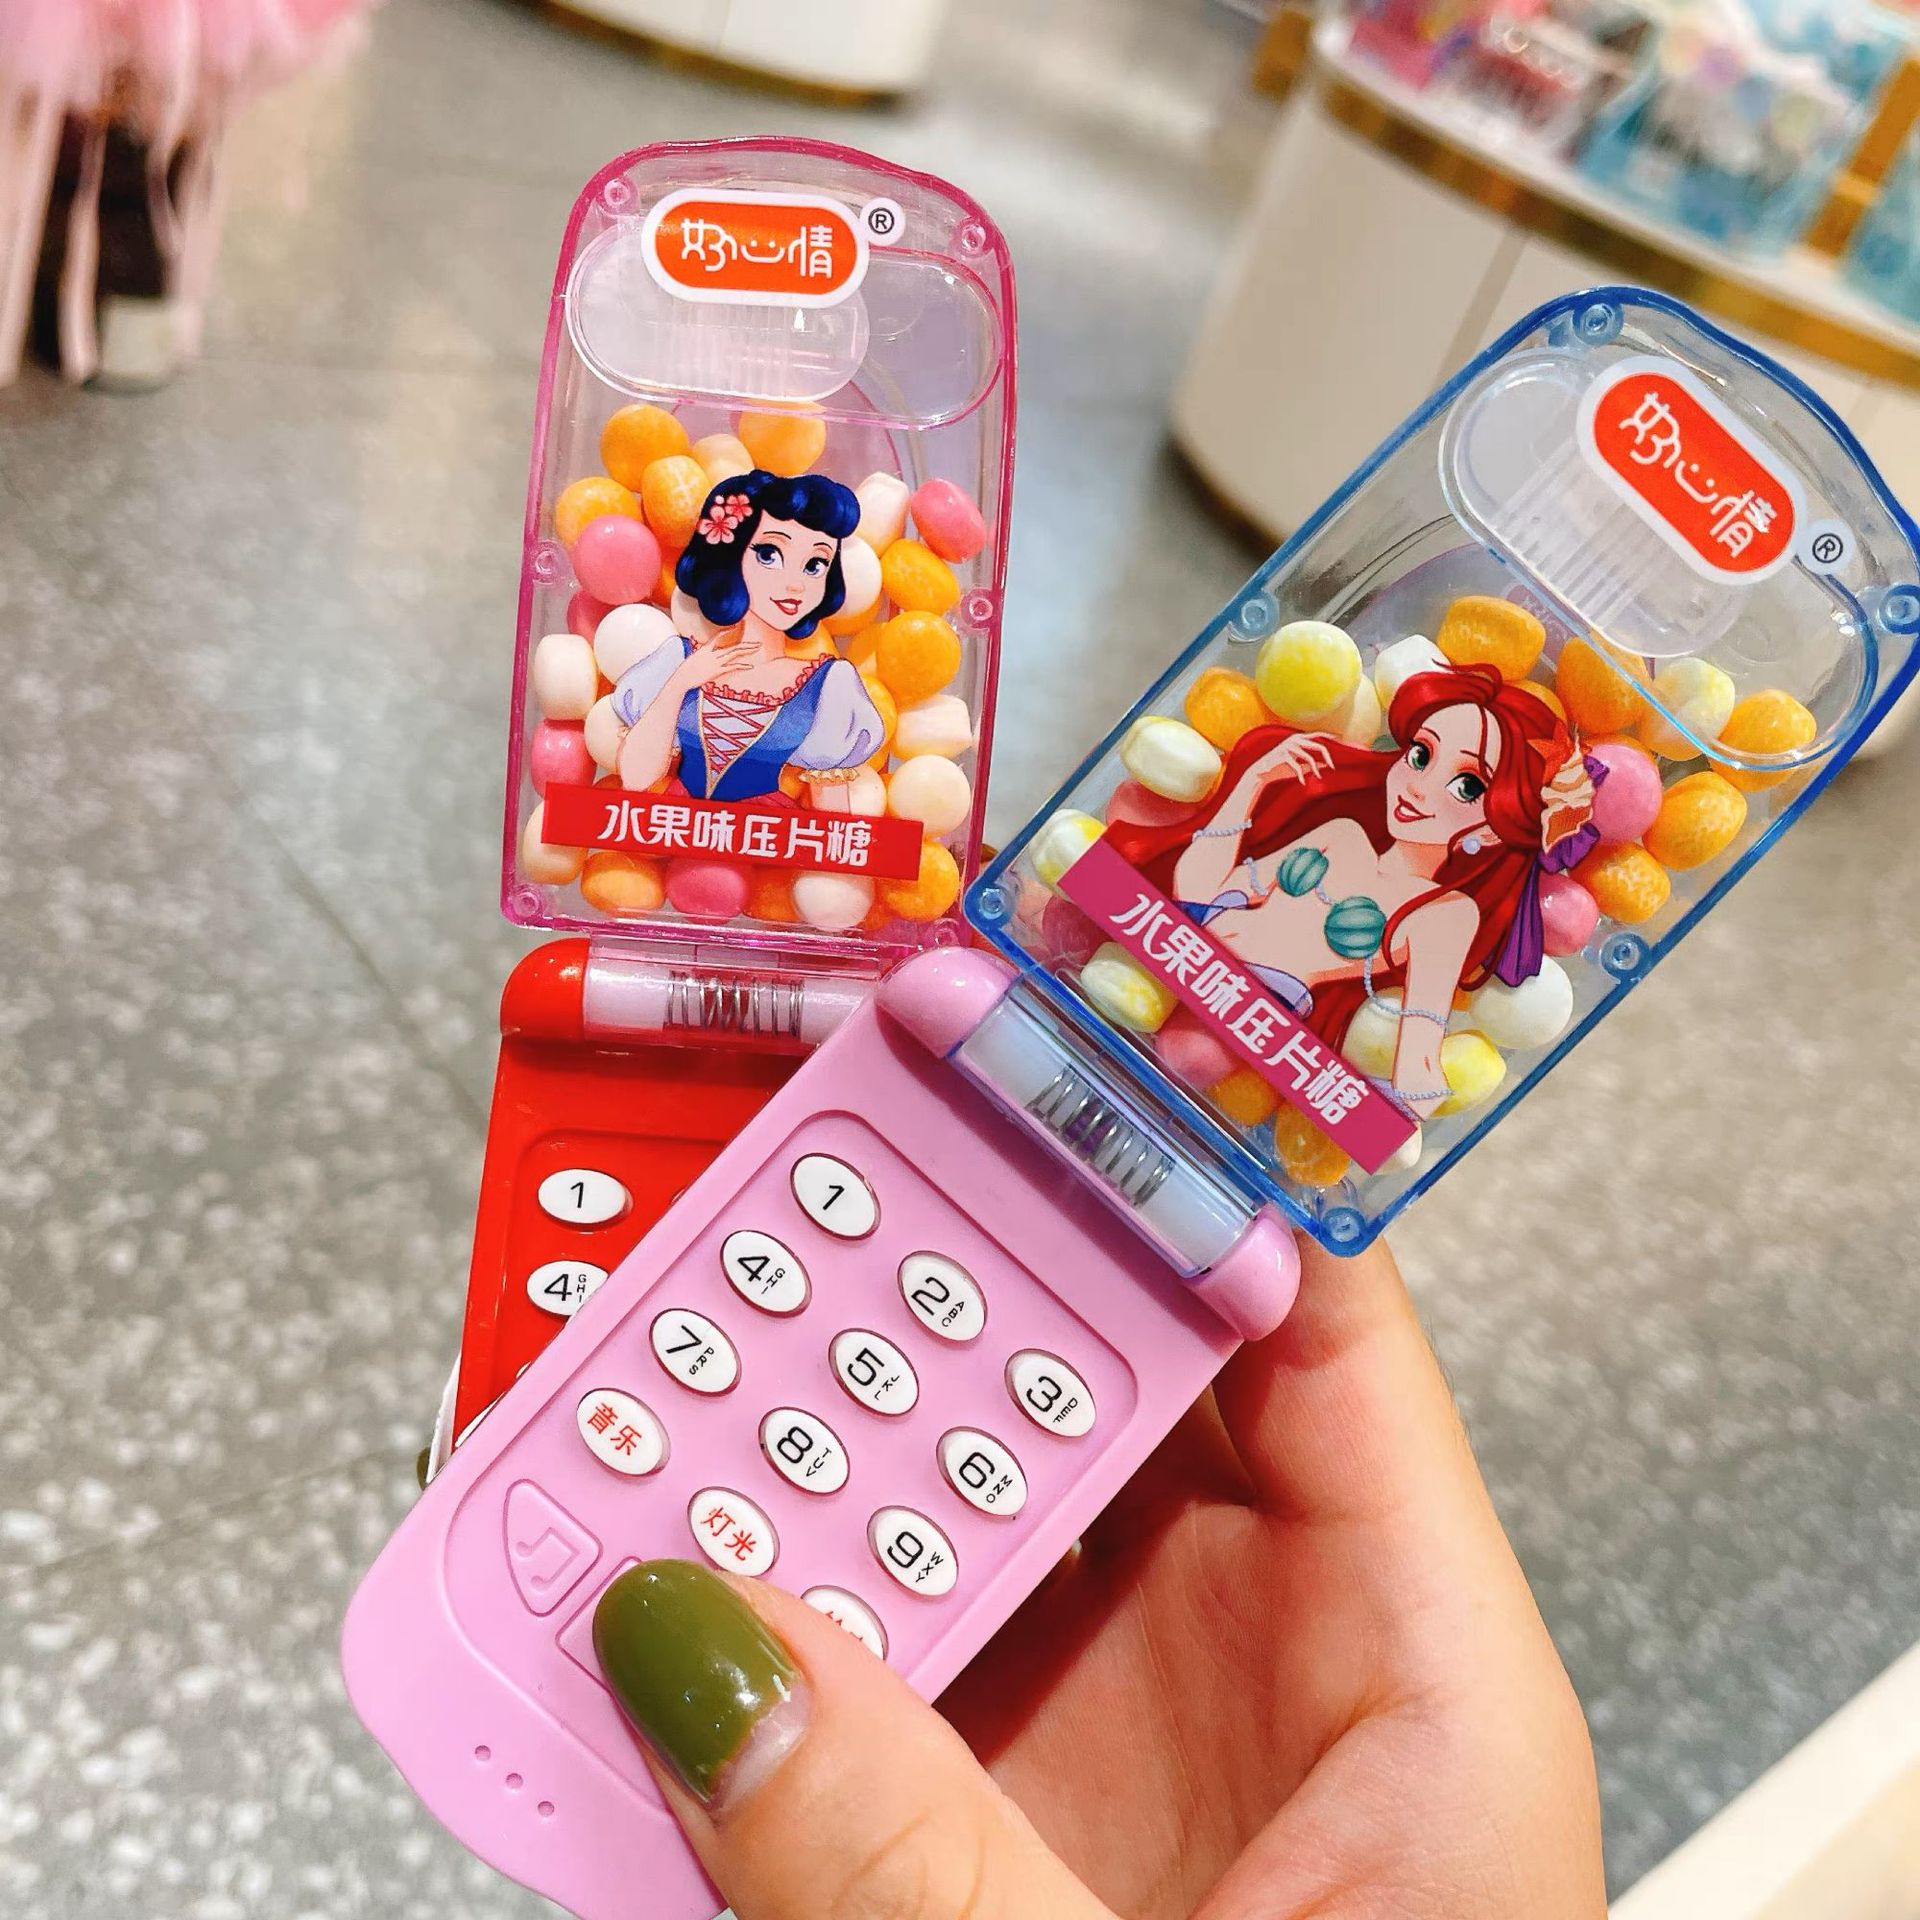 好心情迪创意士尼儿童休闲零食糖果音乐手机包装玩具压片糖